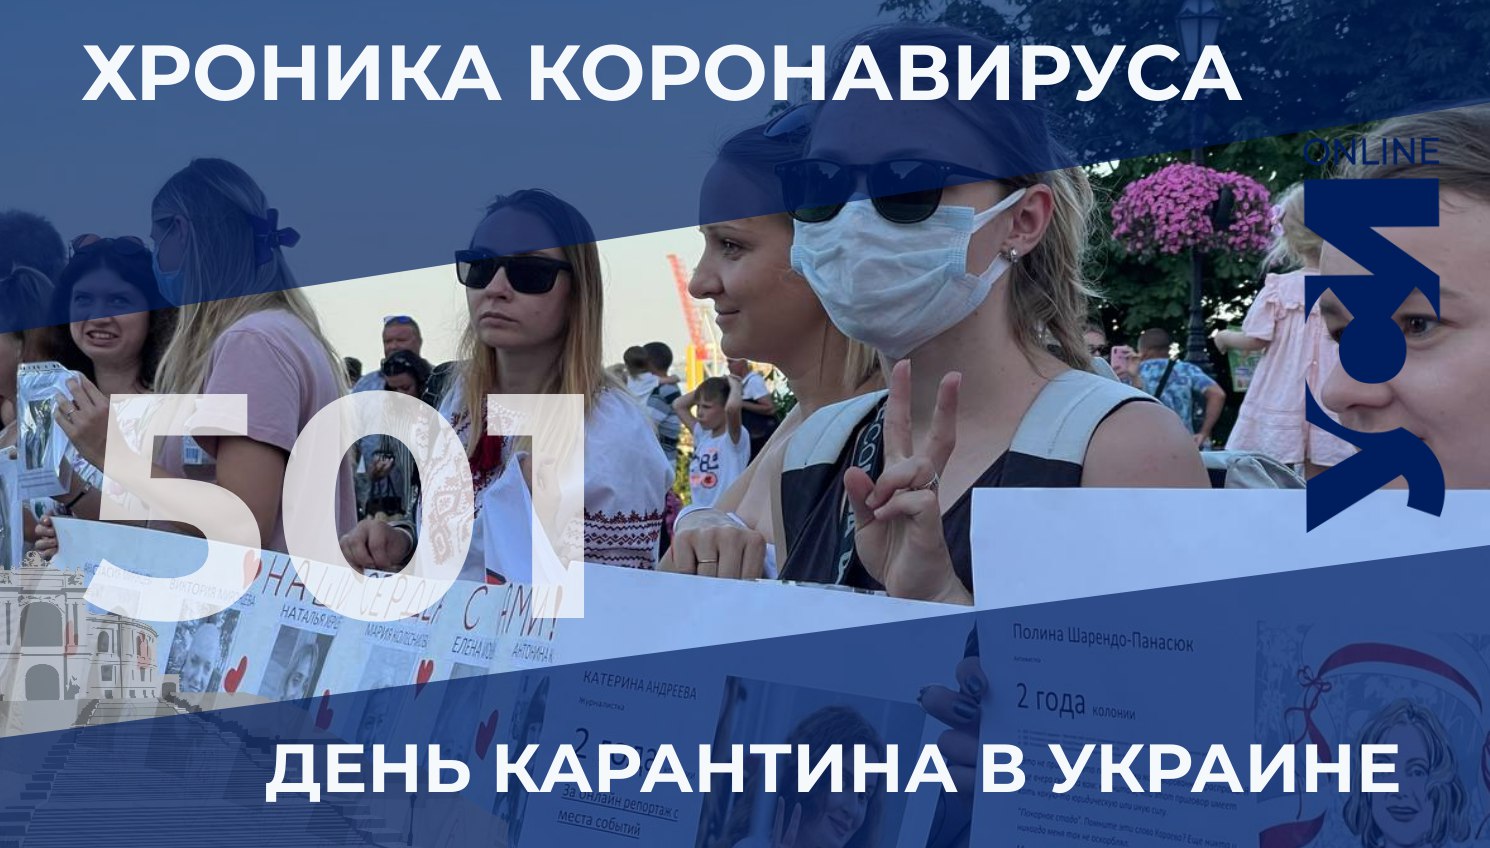 Пандемия: в Одесской области за сутки еще 23 больных «фото»